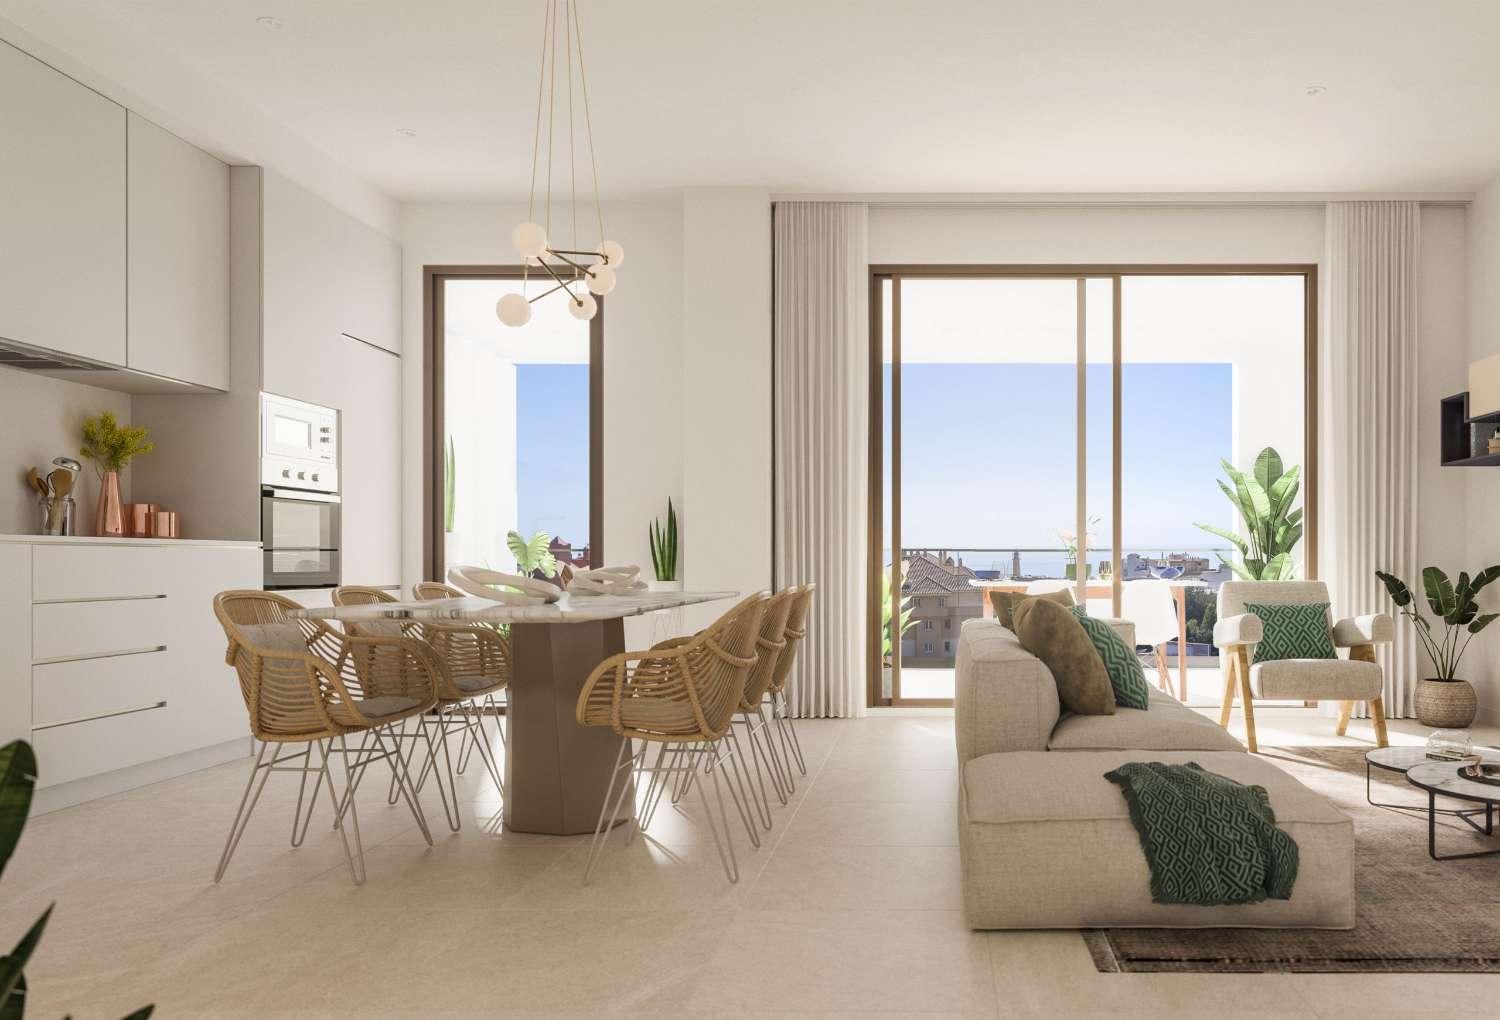 غرفتين أو 3 غرف نوم وحمامين وشرفة مطلة على البحر – ابتداءً من 218.000 يورو